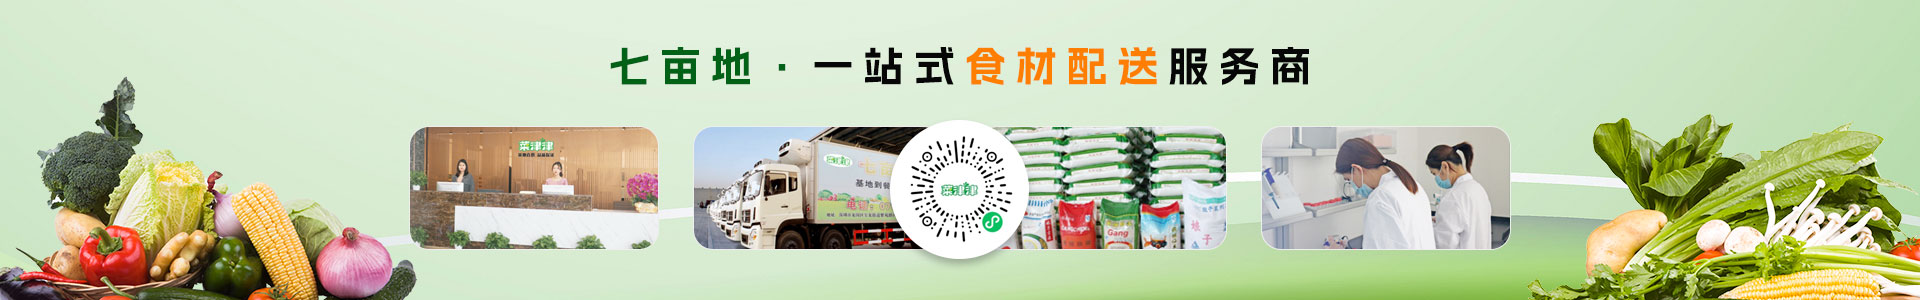 深圳市七亩地农产品实业有限公司-菠萝蜜配送